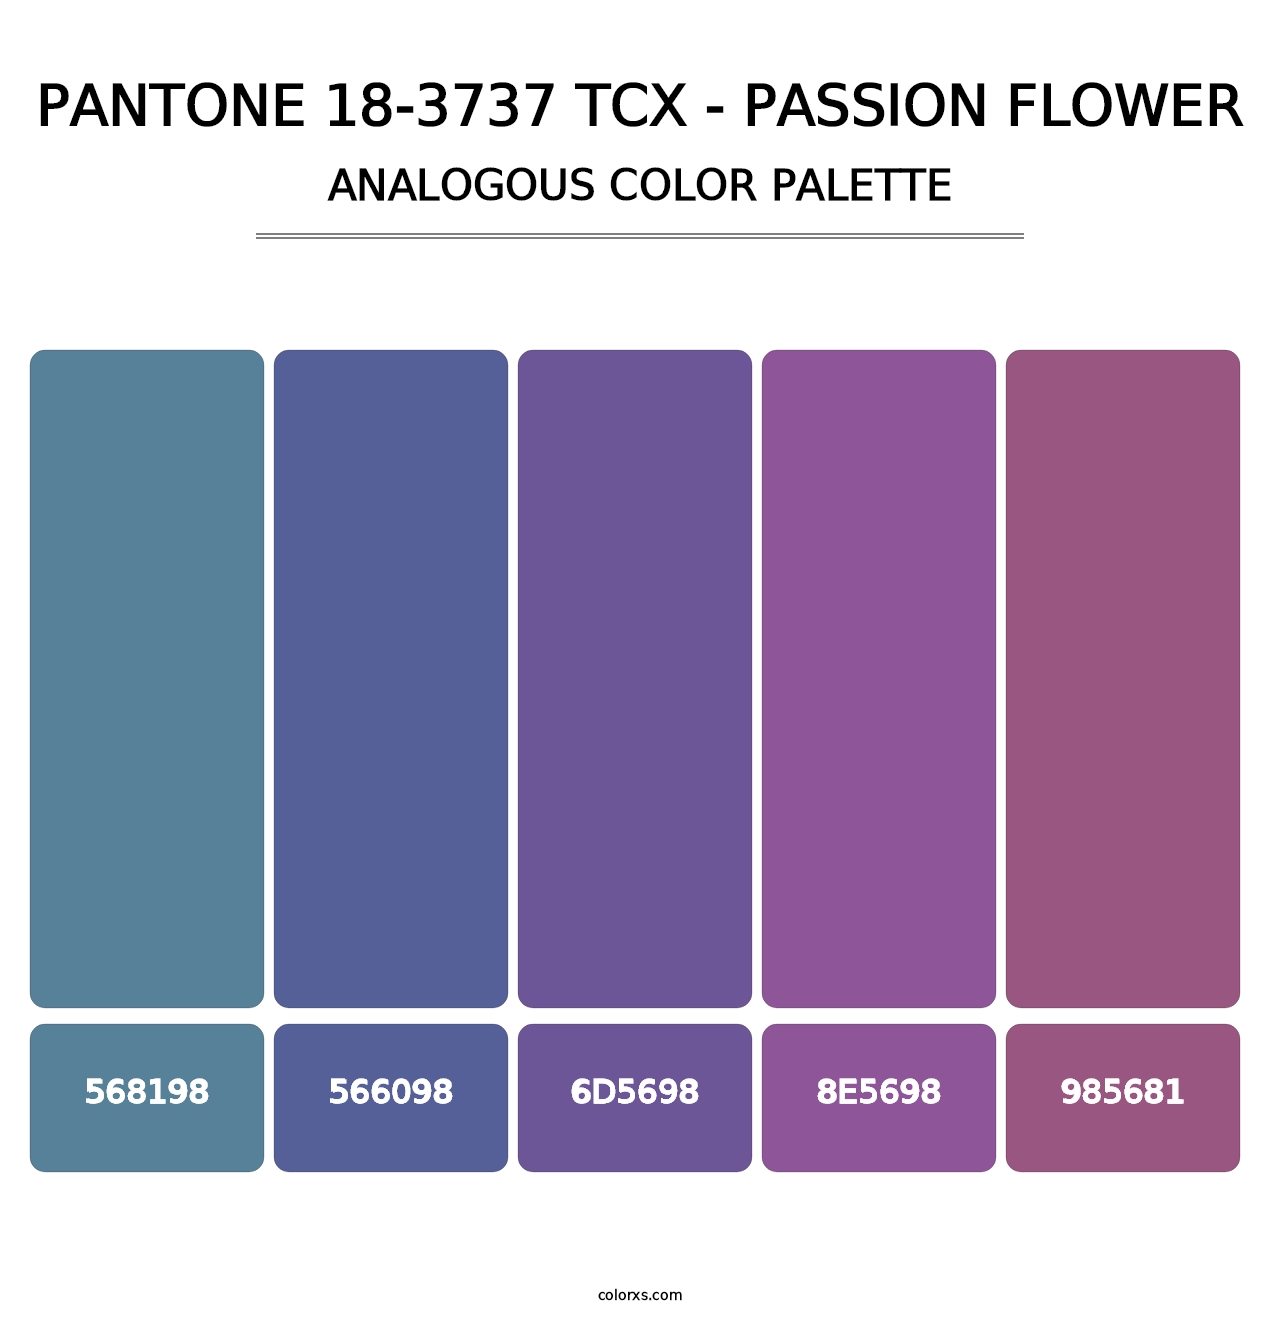 PANTONE 18-3737 TCX - Passion Flower - Analogous Color Palette